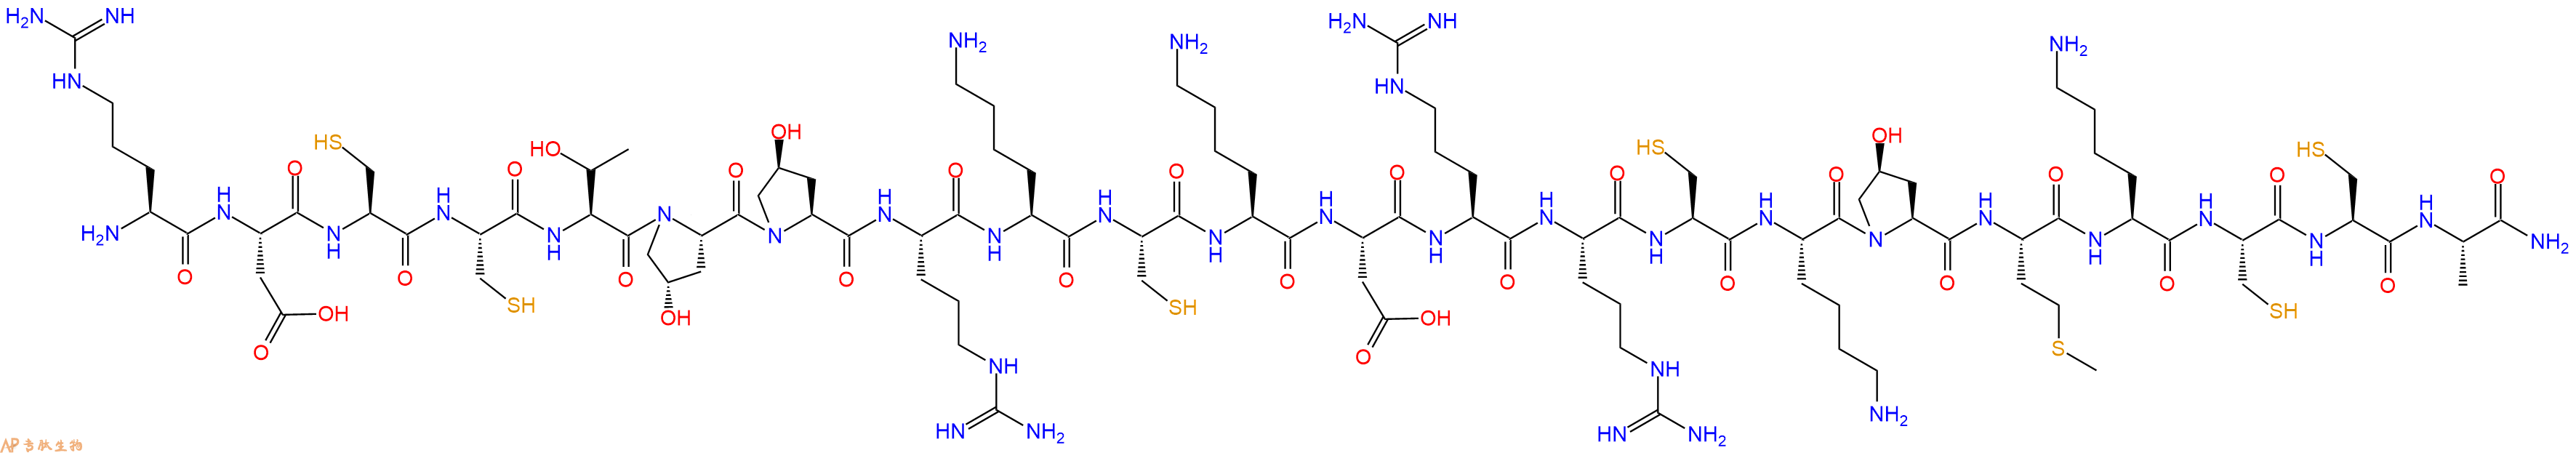 专肽生物产品H2N-Arg-Asp-Cys-Cys-Thr-Hyp-Hyp-Arg-Lys-Cys-Lys-As